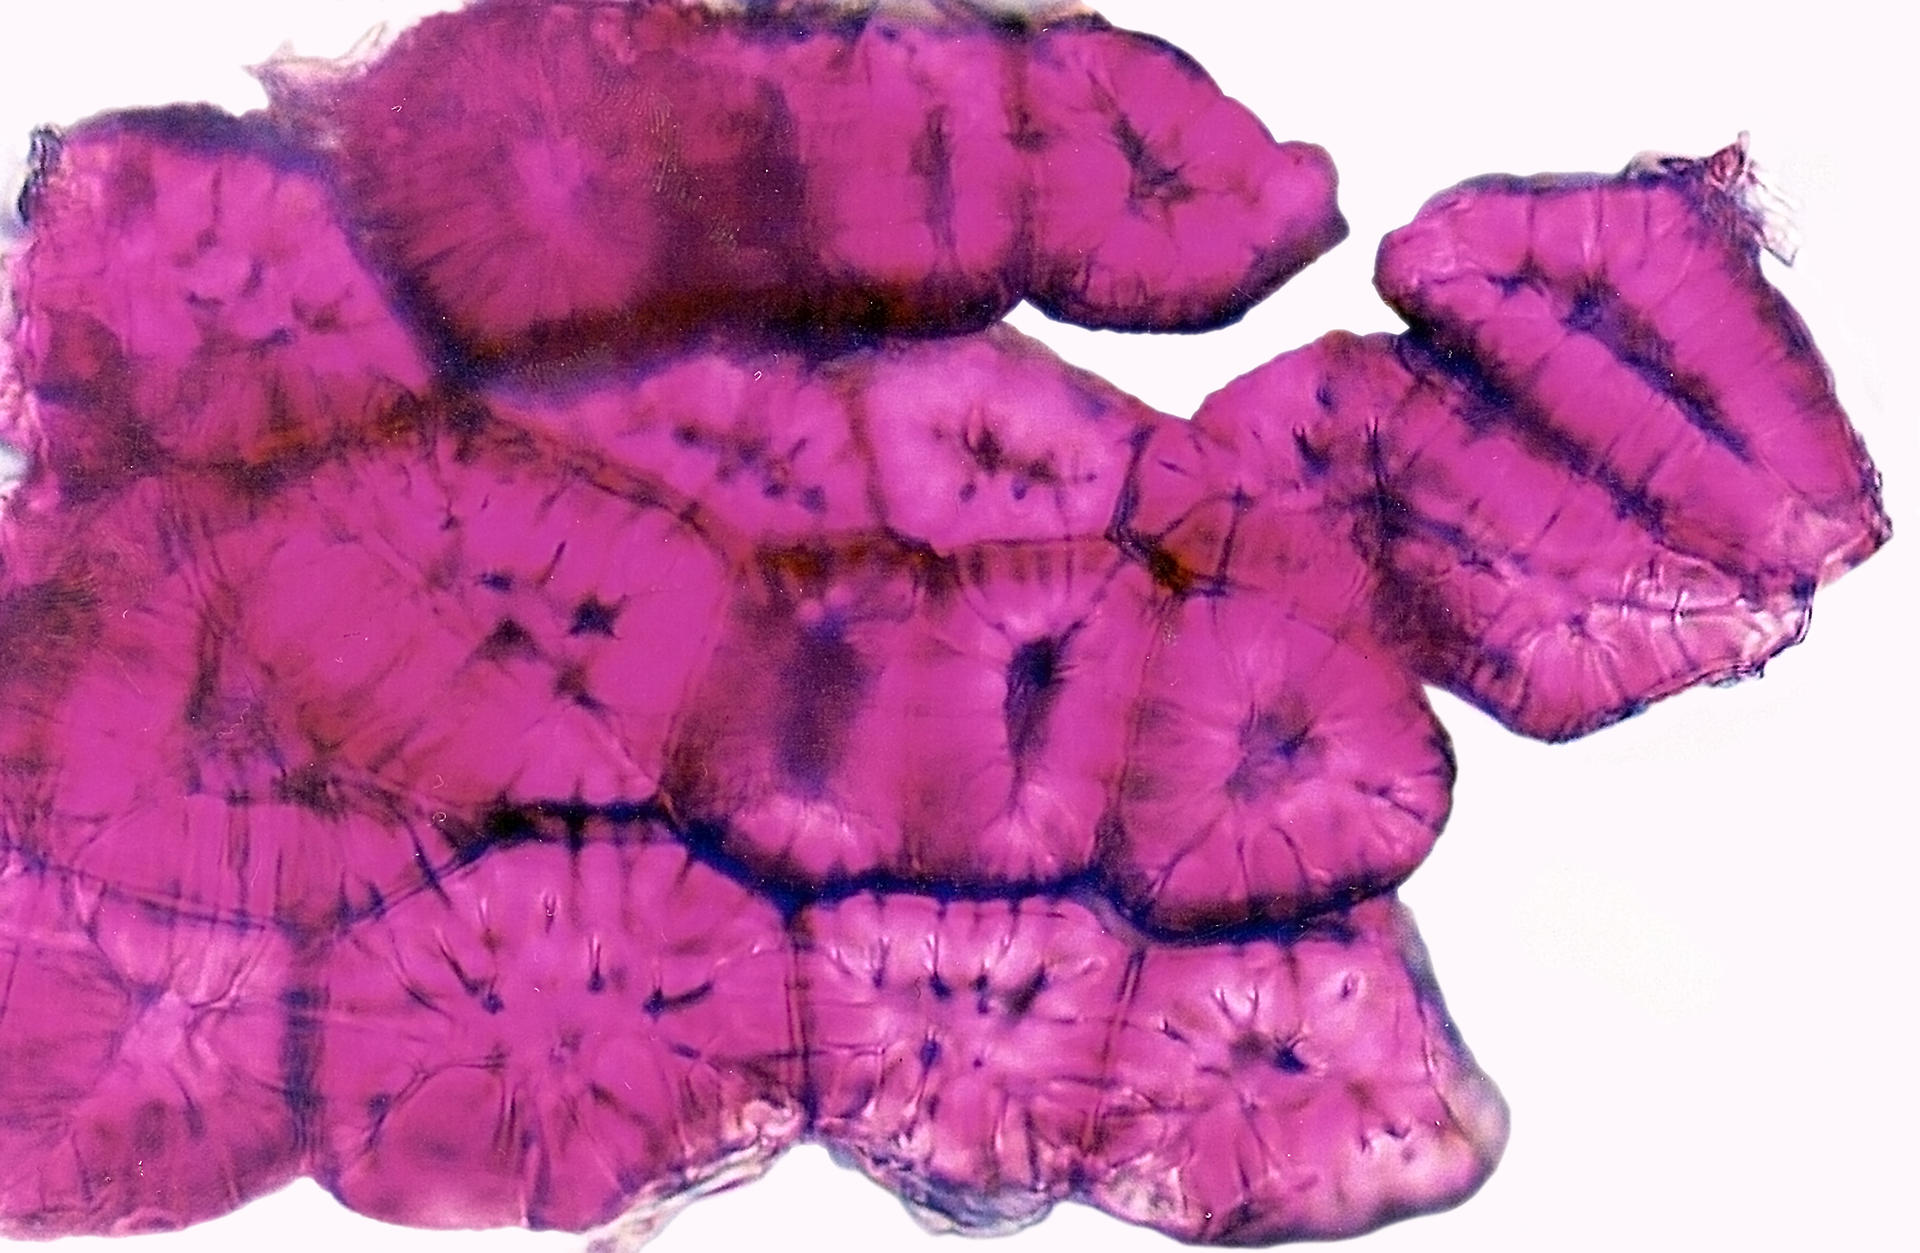 Fotografia mikroskopowa przedstawia powiększenie obrazu komórek kamiennych. Komórki mają b. grube ściany i małe światło. Wybarwione na różowo.